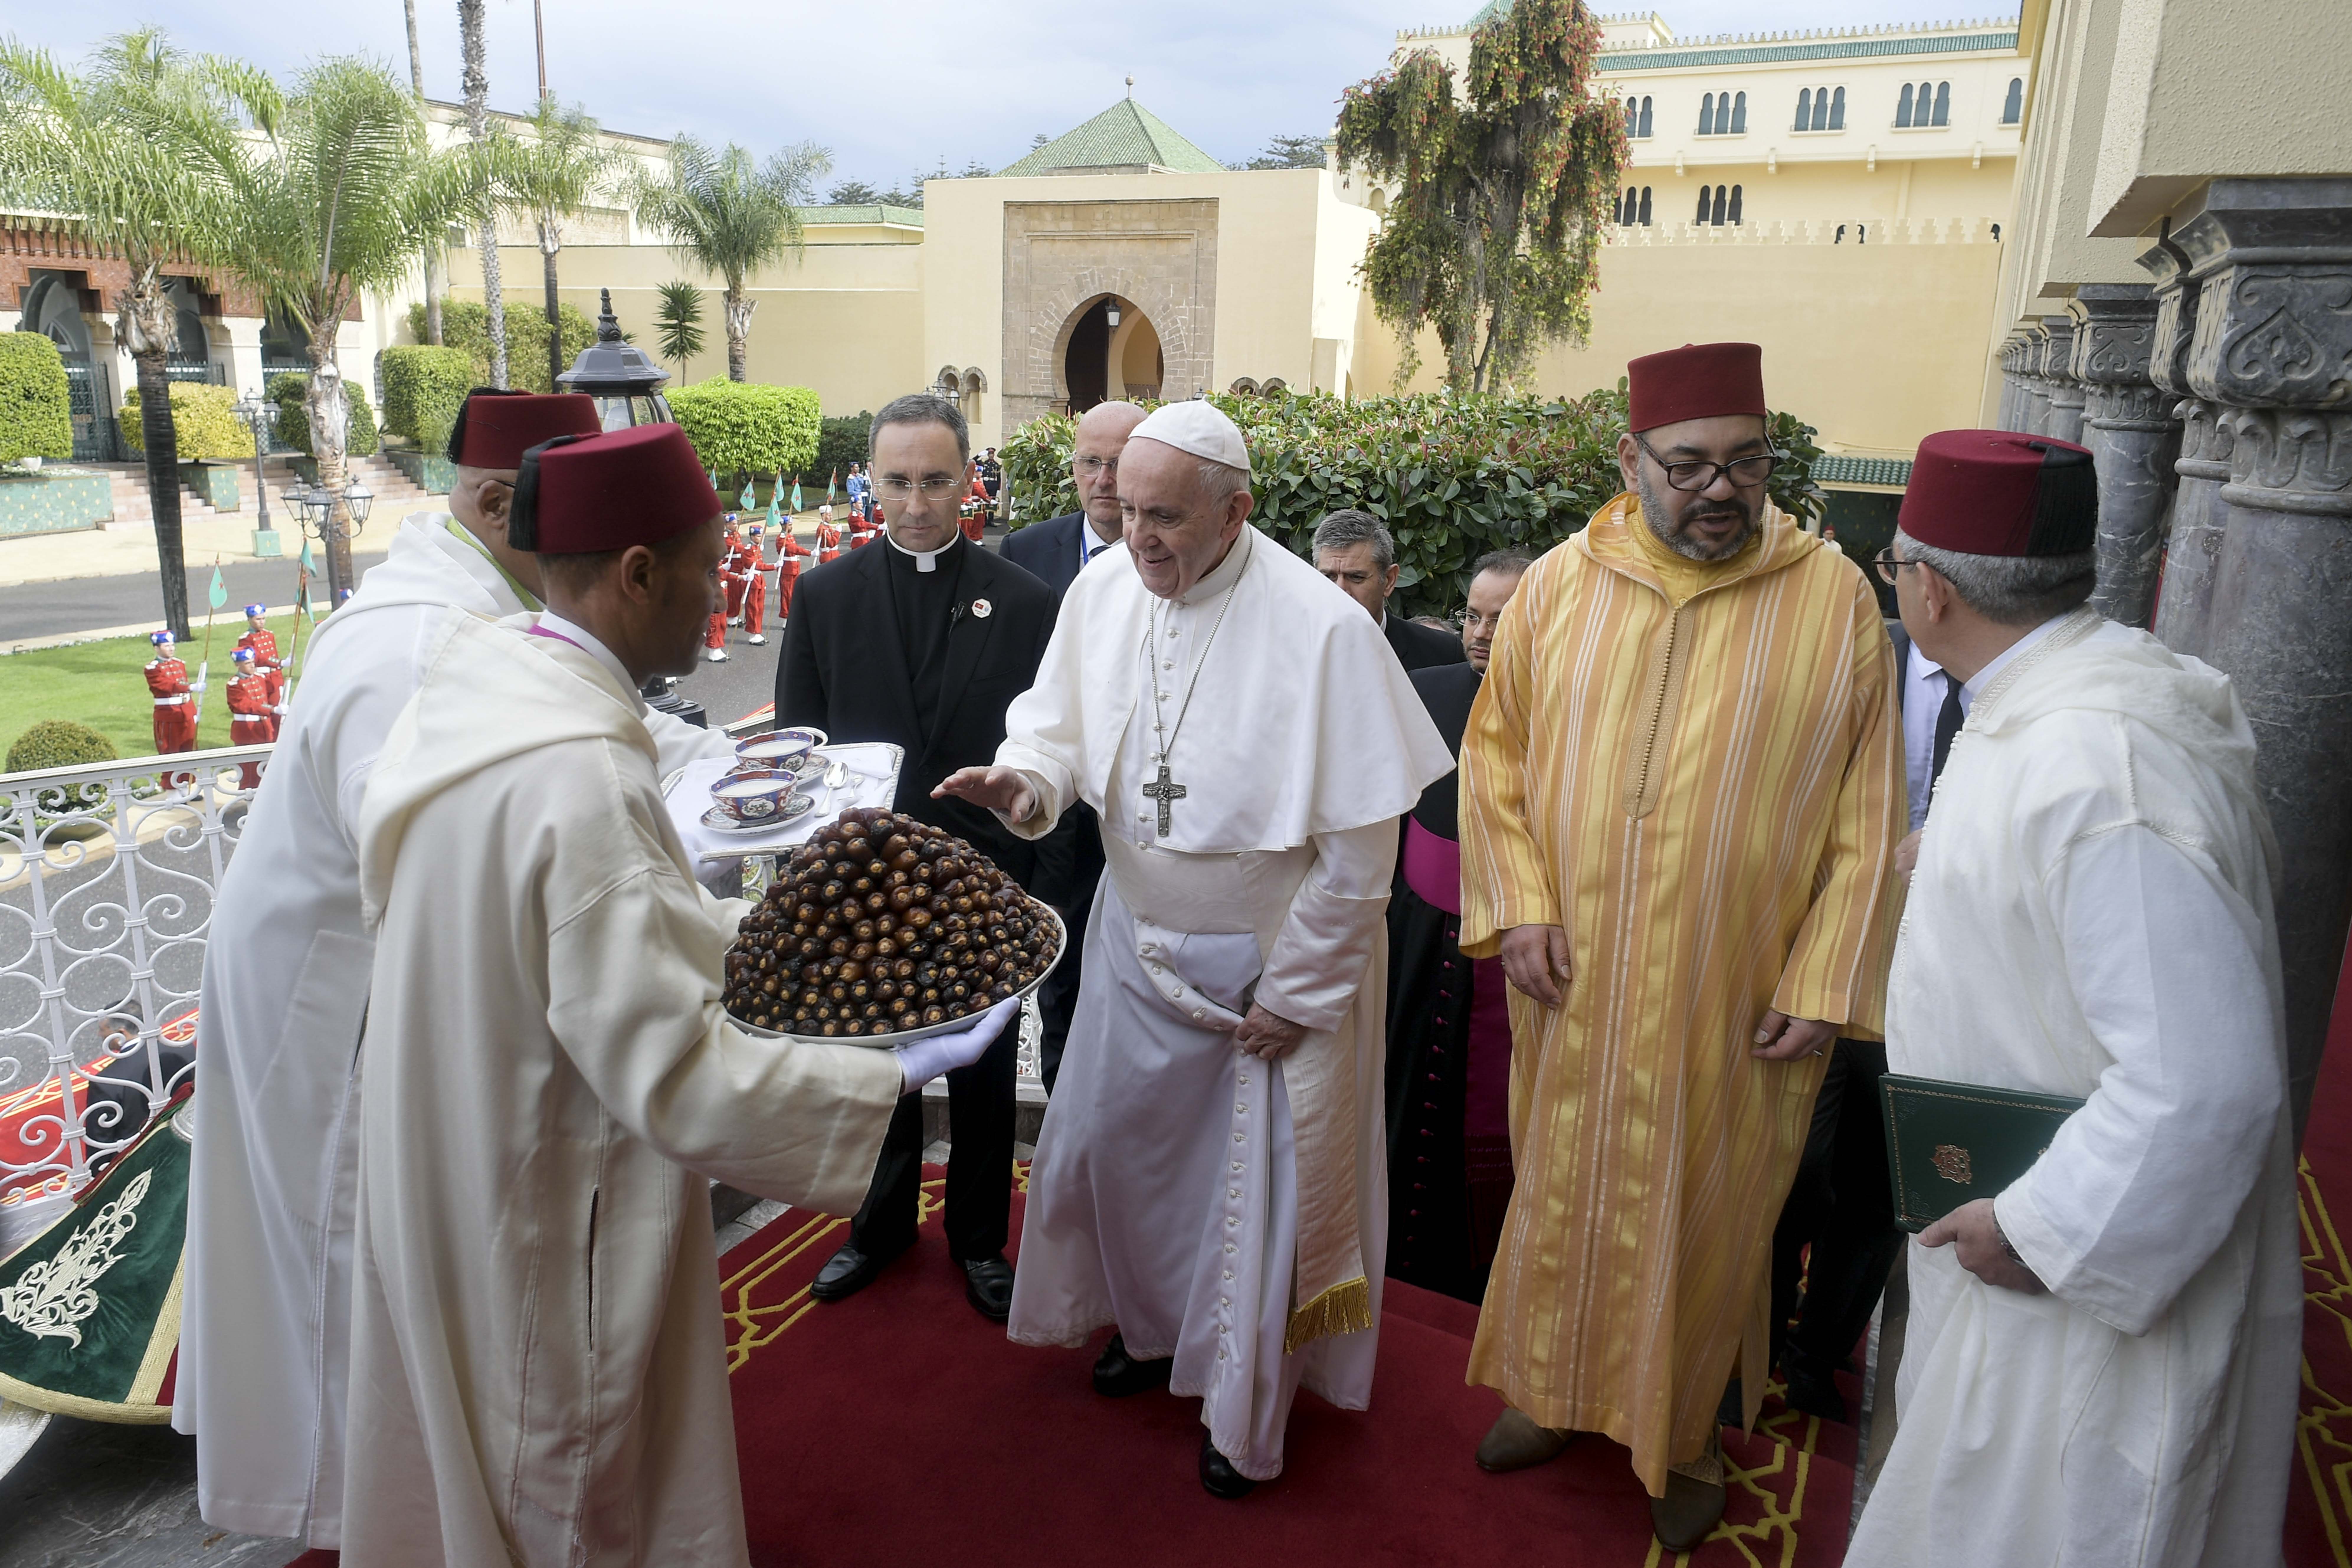 Visite au roi du Maroc Mohammed VI au palais royal © Vatican Media